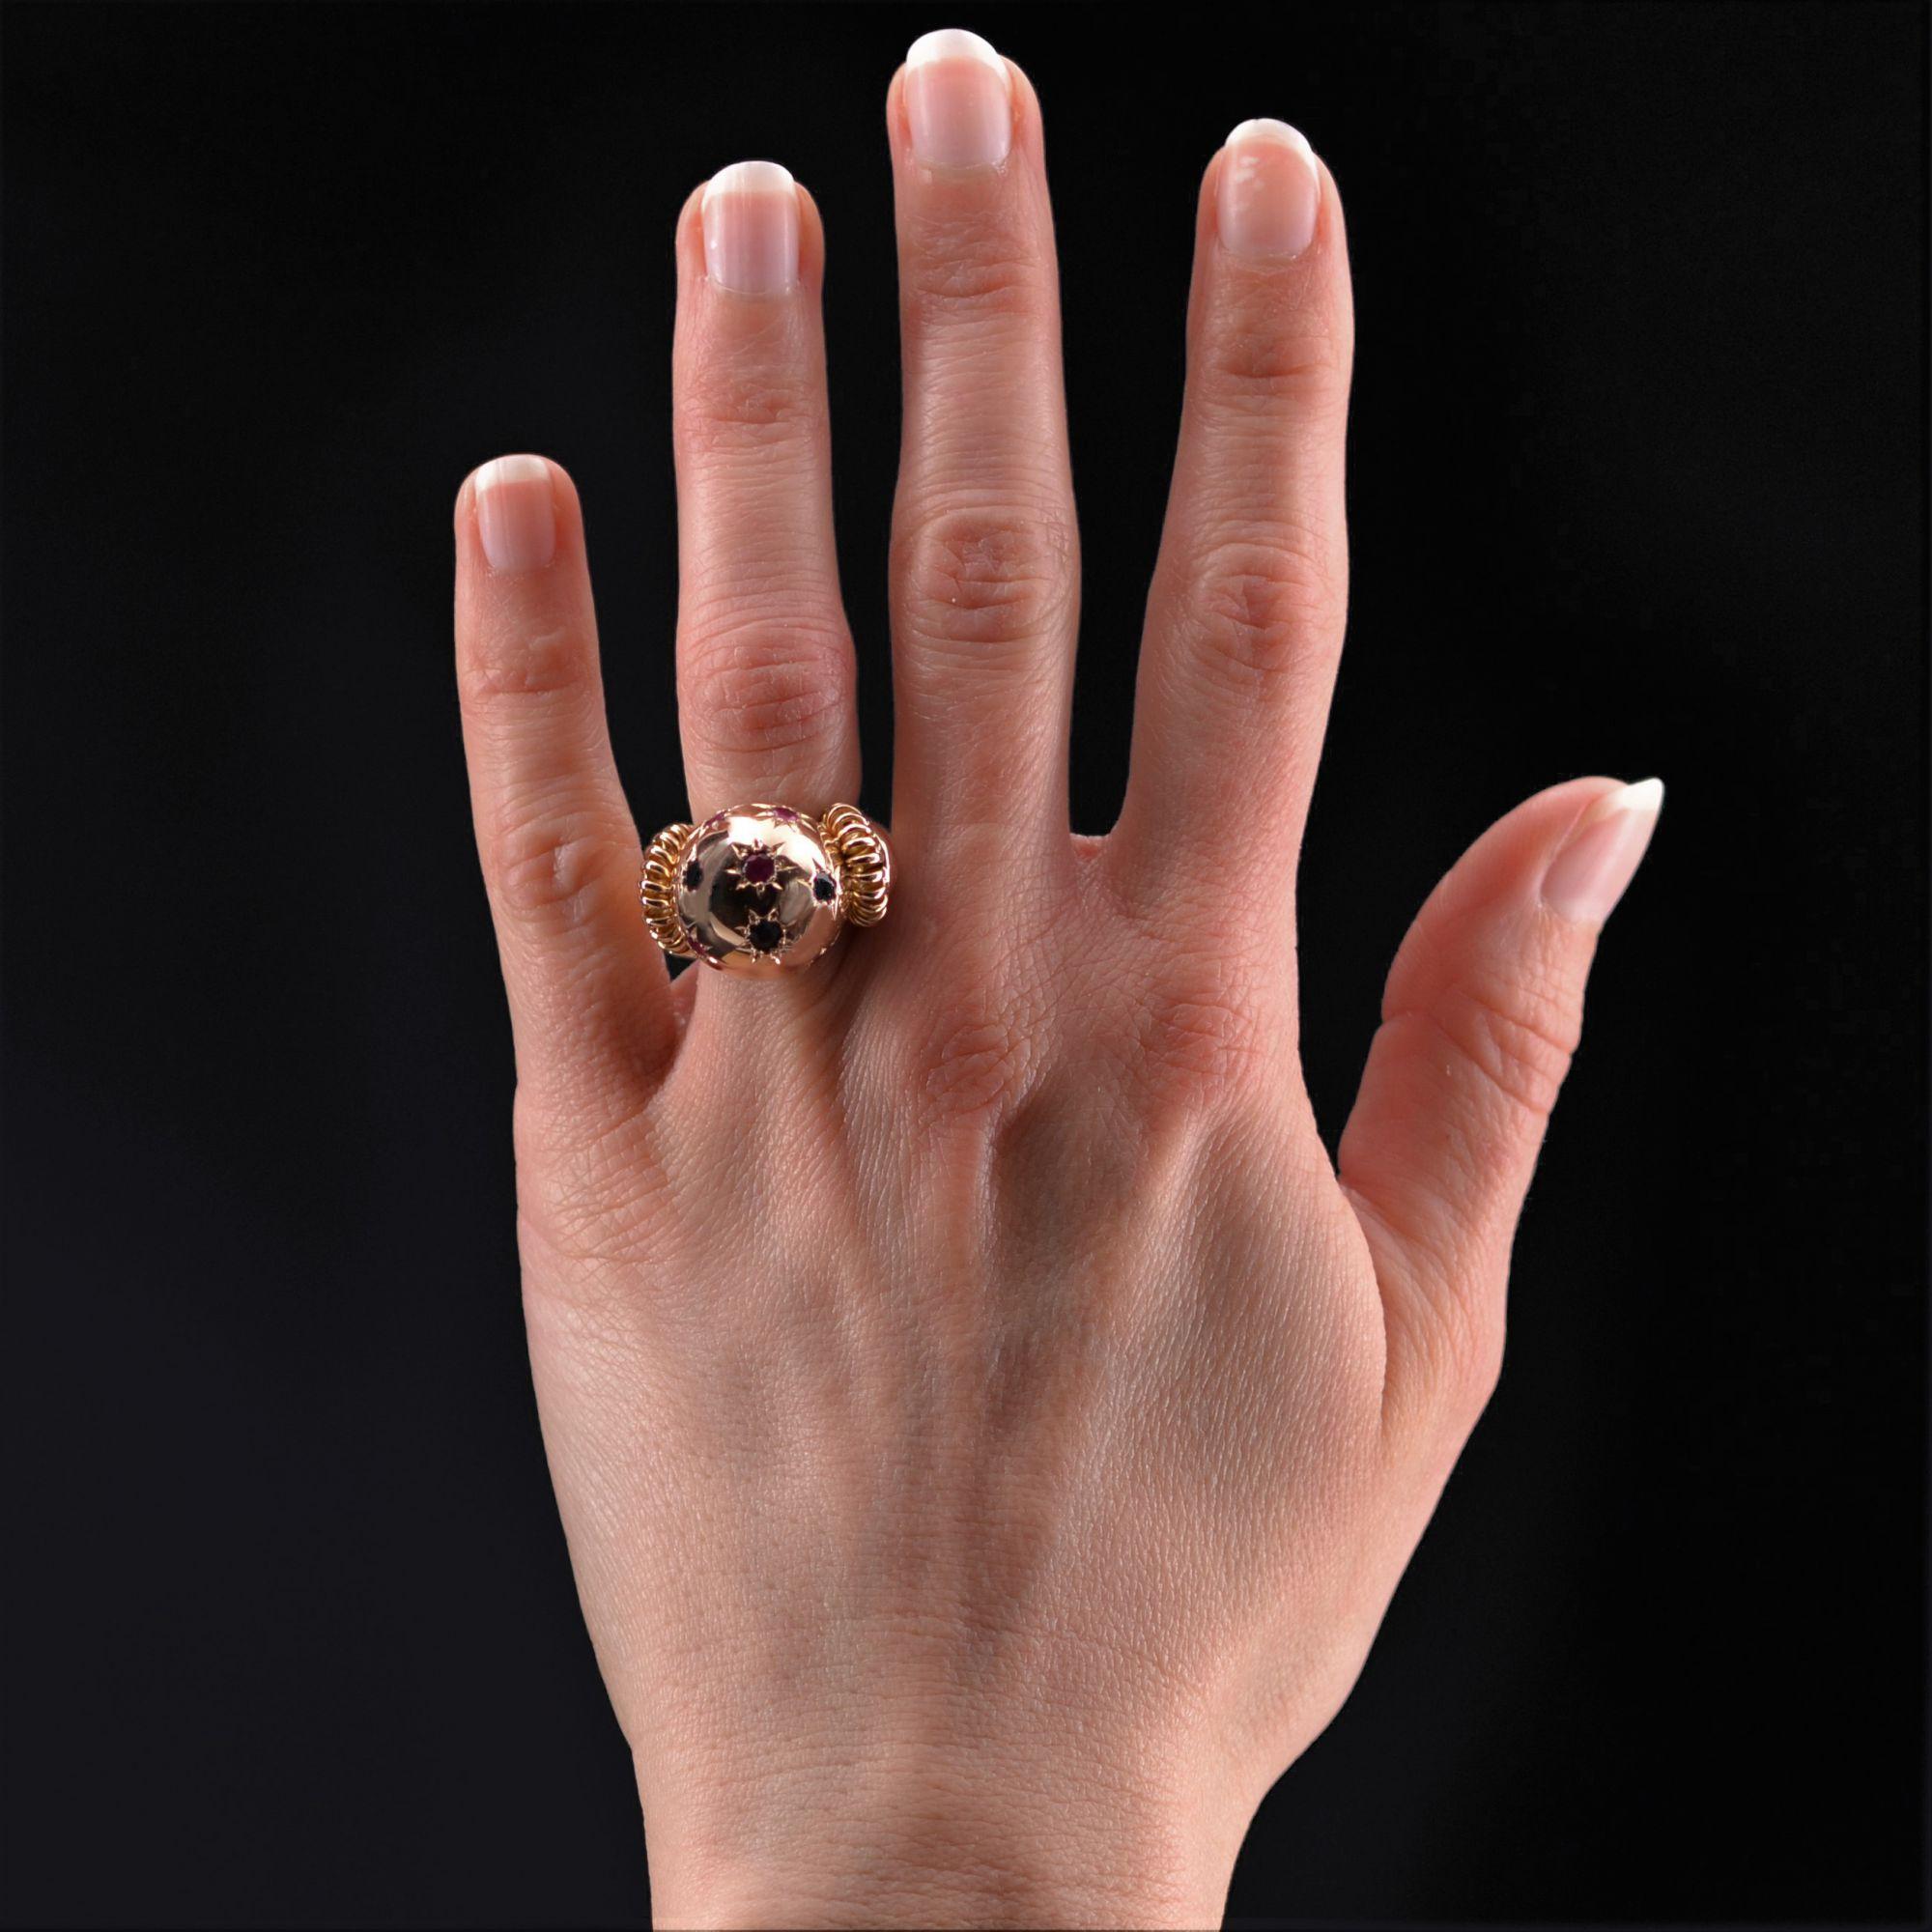 Ring aus 18 Karat Roségold, eigene Punzierung.
Dieser Ring, eine Ikone der 1950er Jahre, ist mit 5 runden Rubinen und 4 runden Saphiren in Sternfassung besetzt. Auf beiden Seiten des Kopfes besteht der Anfang des Rings aus einer durchbrochenen